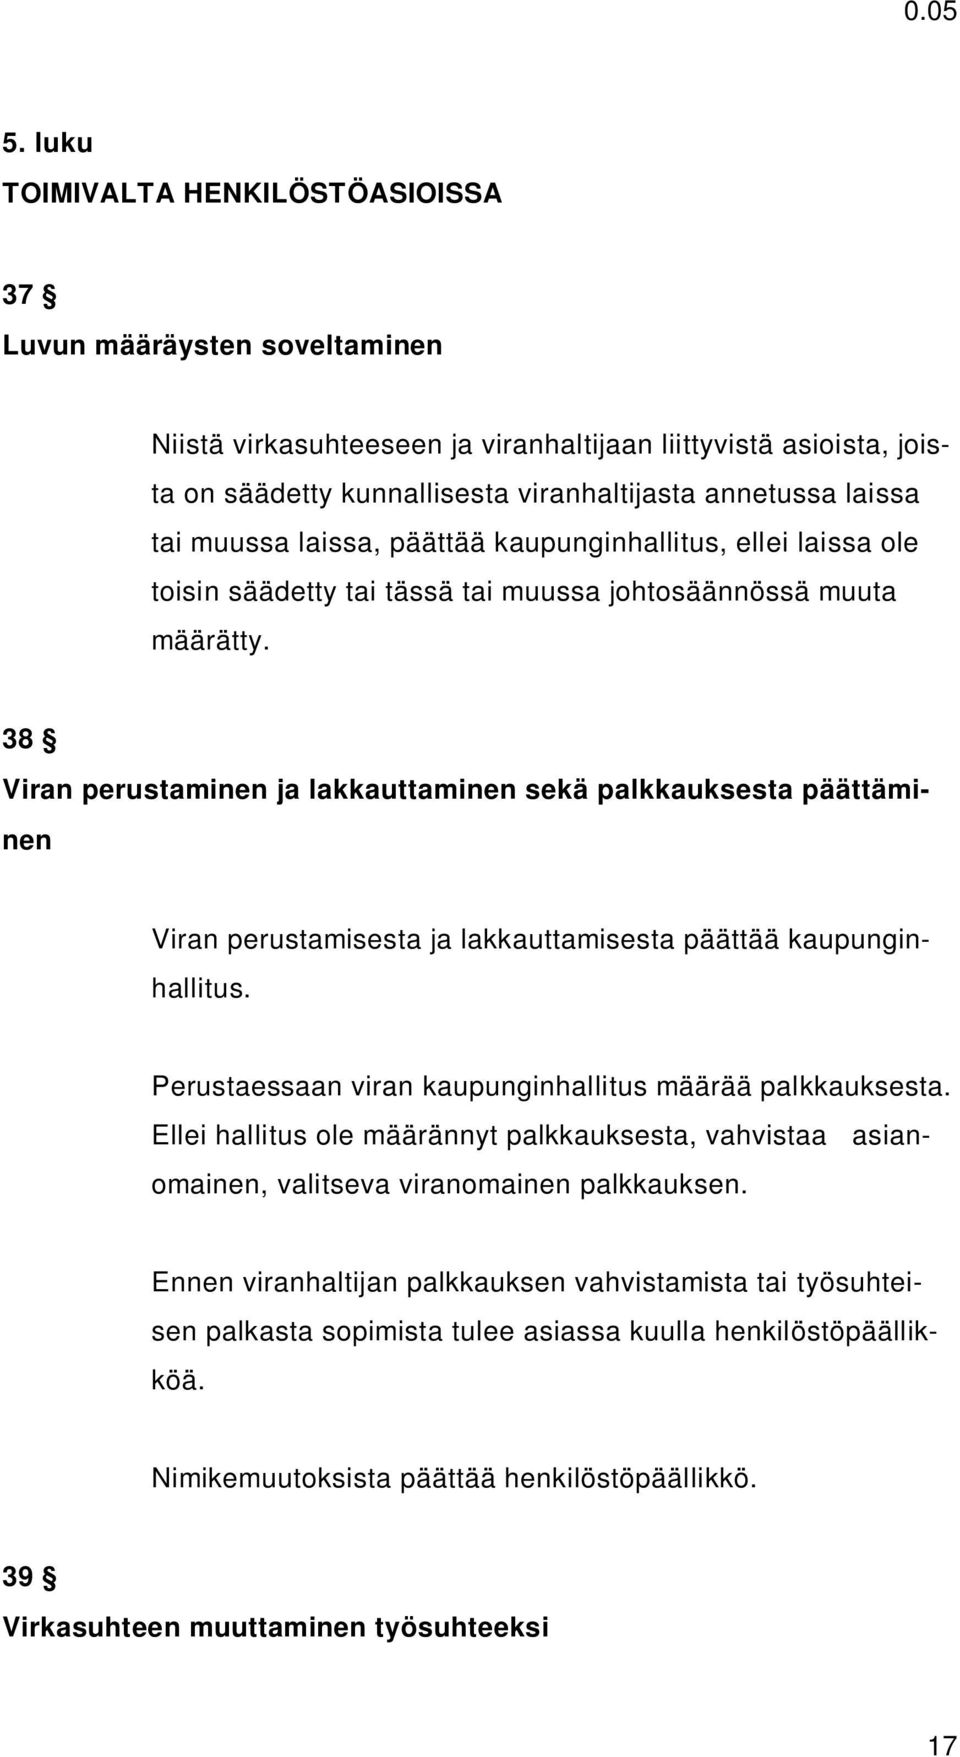 38 Viran perustaminen ja lakkauttaminen sekä palkkauksesta päättäminen Viran perustamisesta ja lakkauttamisesta päättää kaupunginhallitus. Perustaessaan viran kaupunginhallitus määrää palkkauksesta.